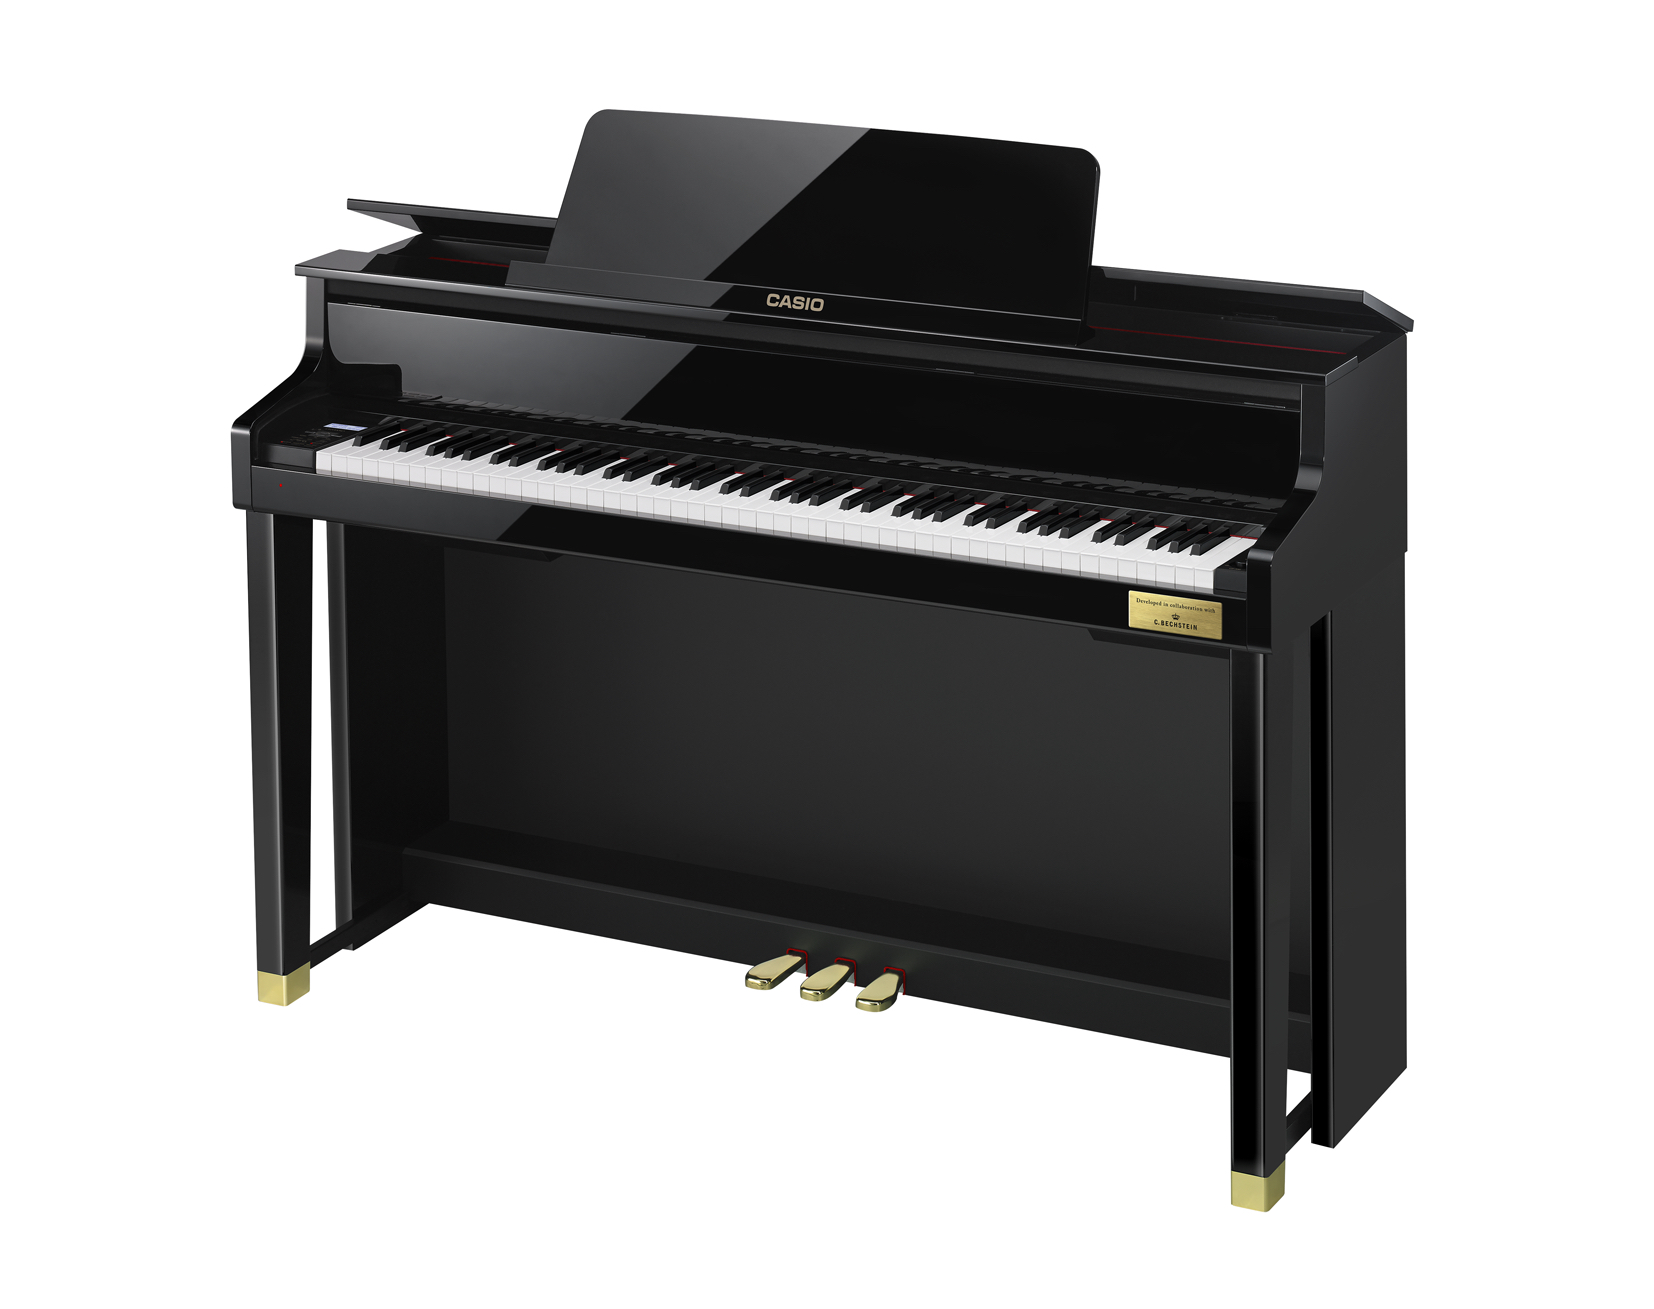 Casio GP-500 Grand Hybrid Piano right